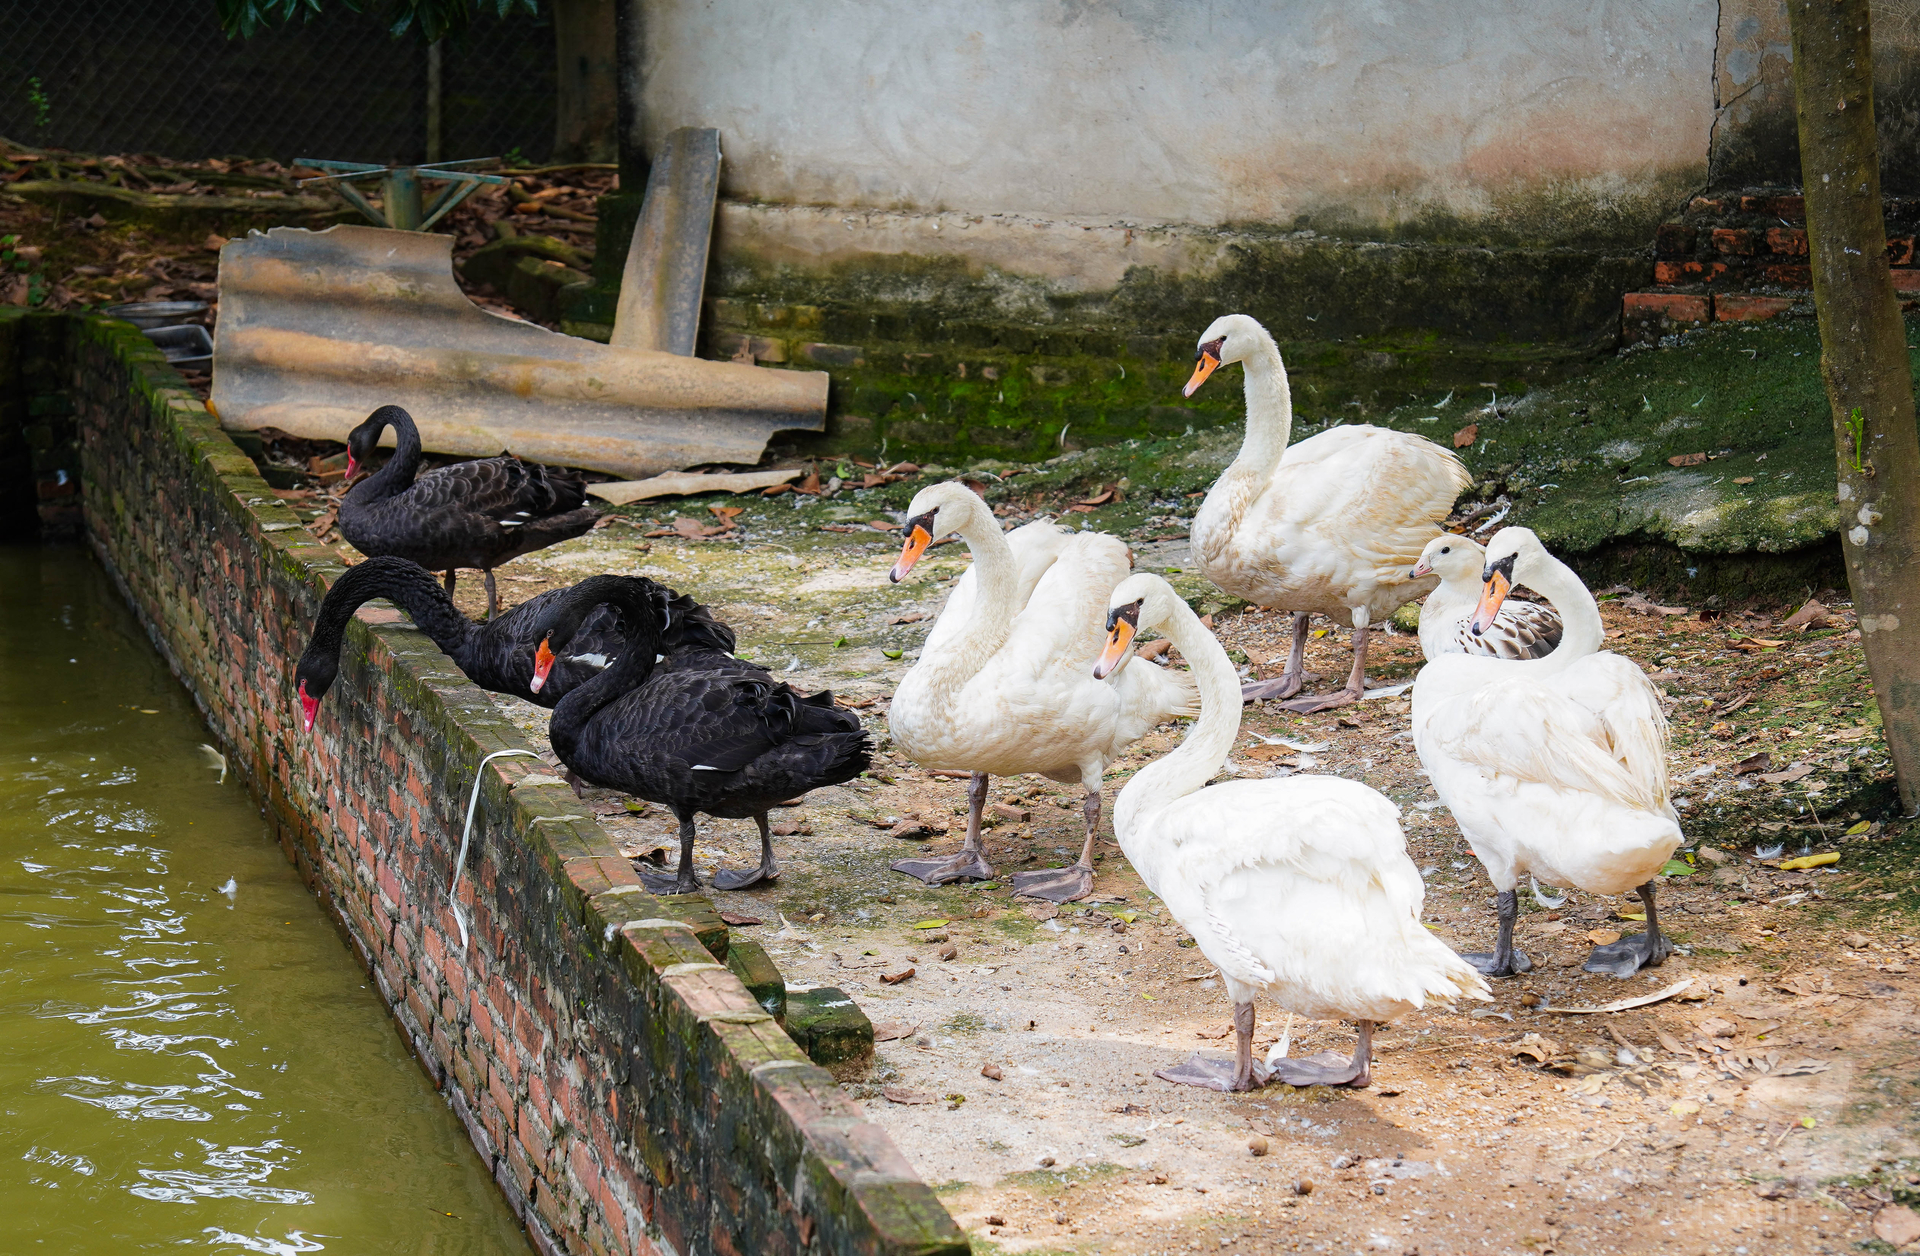 Hiện tại, Vườn Chim Việt đang sở hữu bộ sưu tập đa dạng với khoảng 15 loài chim và nhiều loại gia cầm, thủy cầm khác nhau. Trong số đó, thủy cầm có 6 loài gồm vịt cảnh, uyên ương, ngỗng trời, thiên nga...